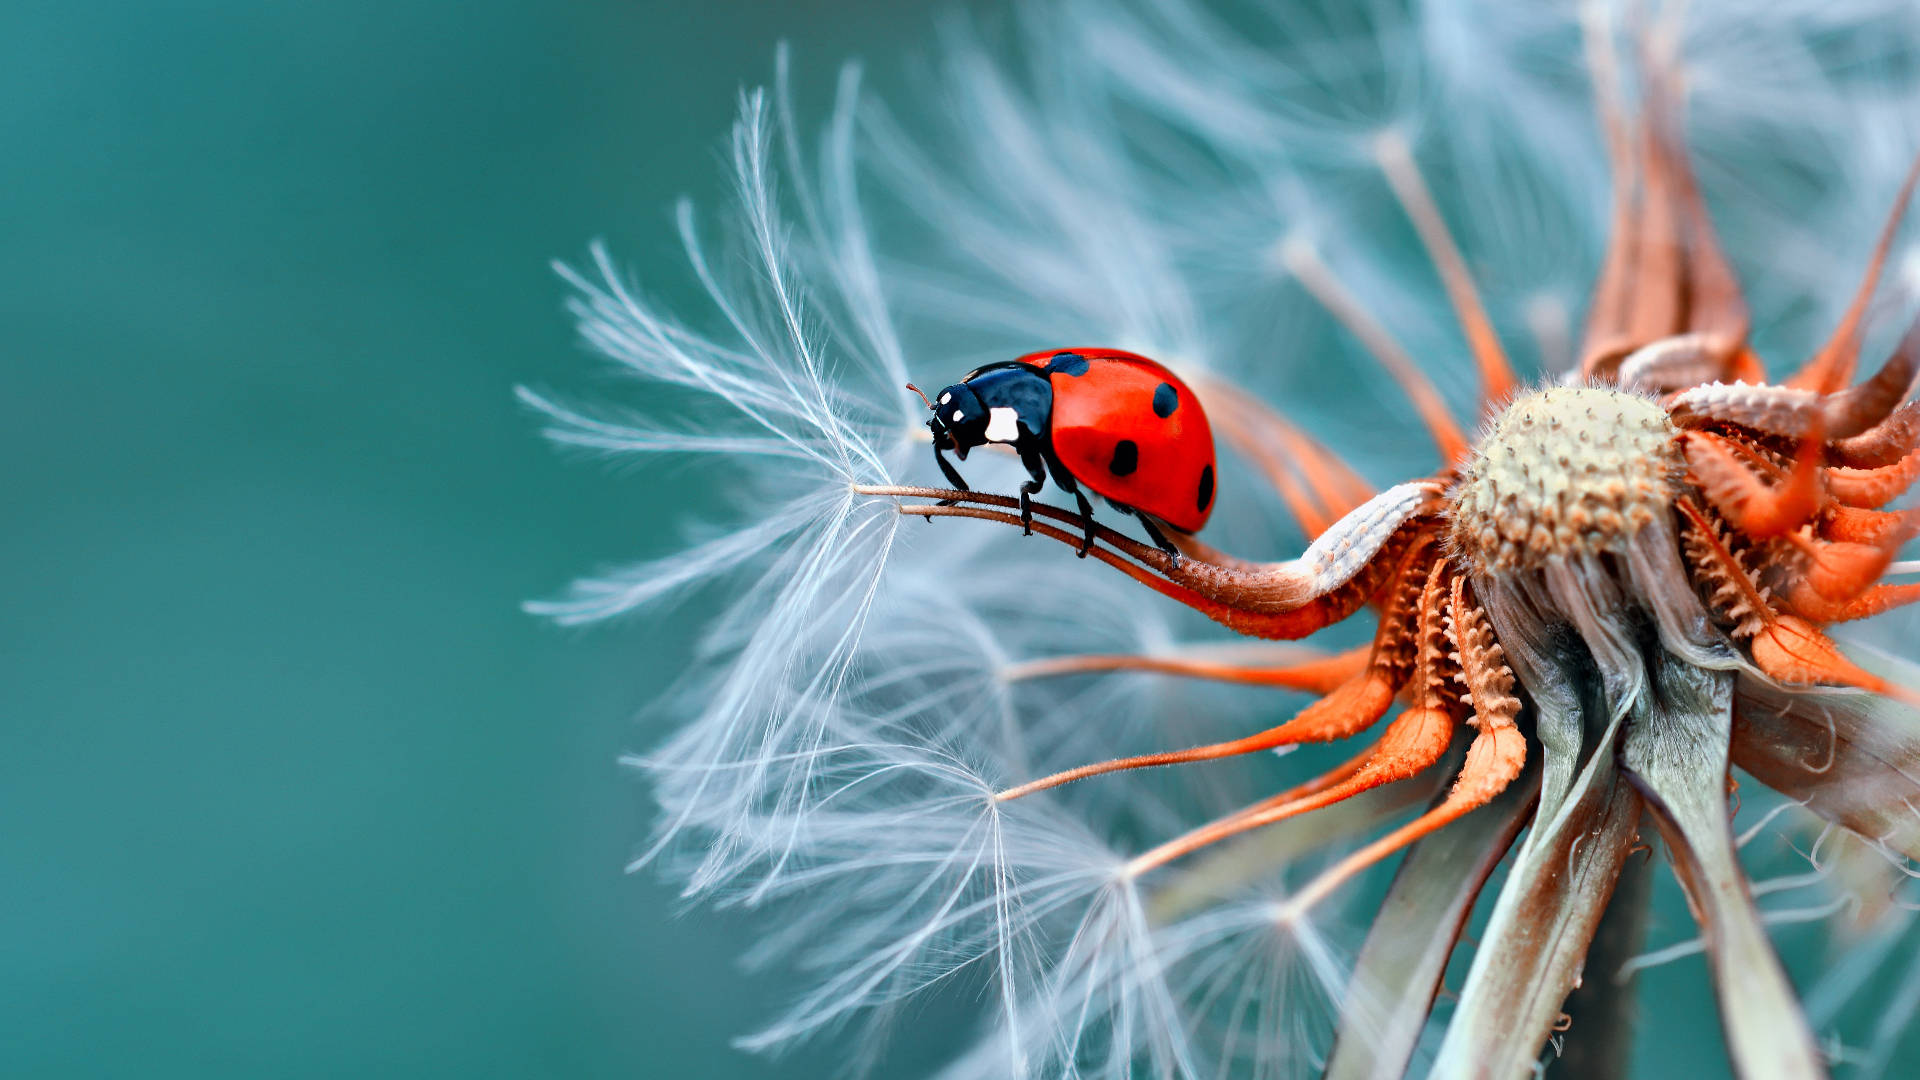 Download Ladybug Full Screen Desktop Wallpaper 